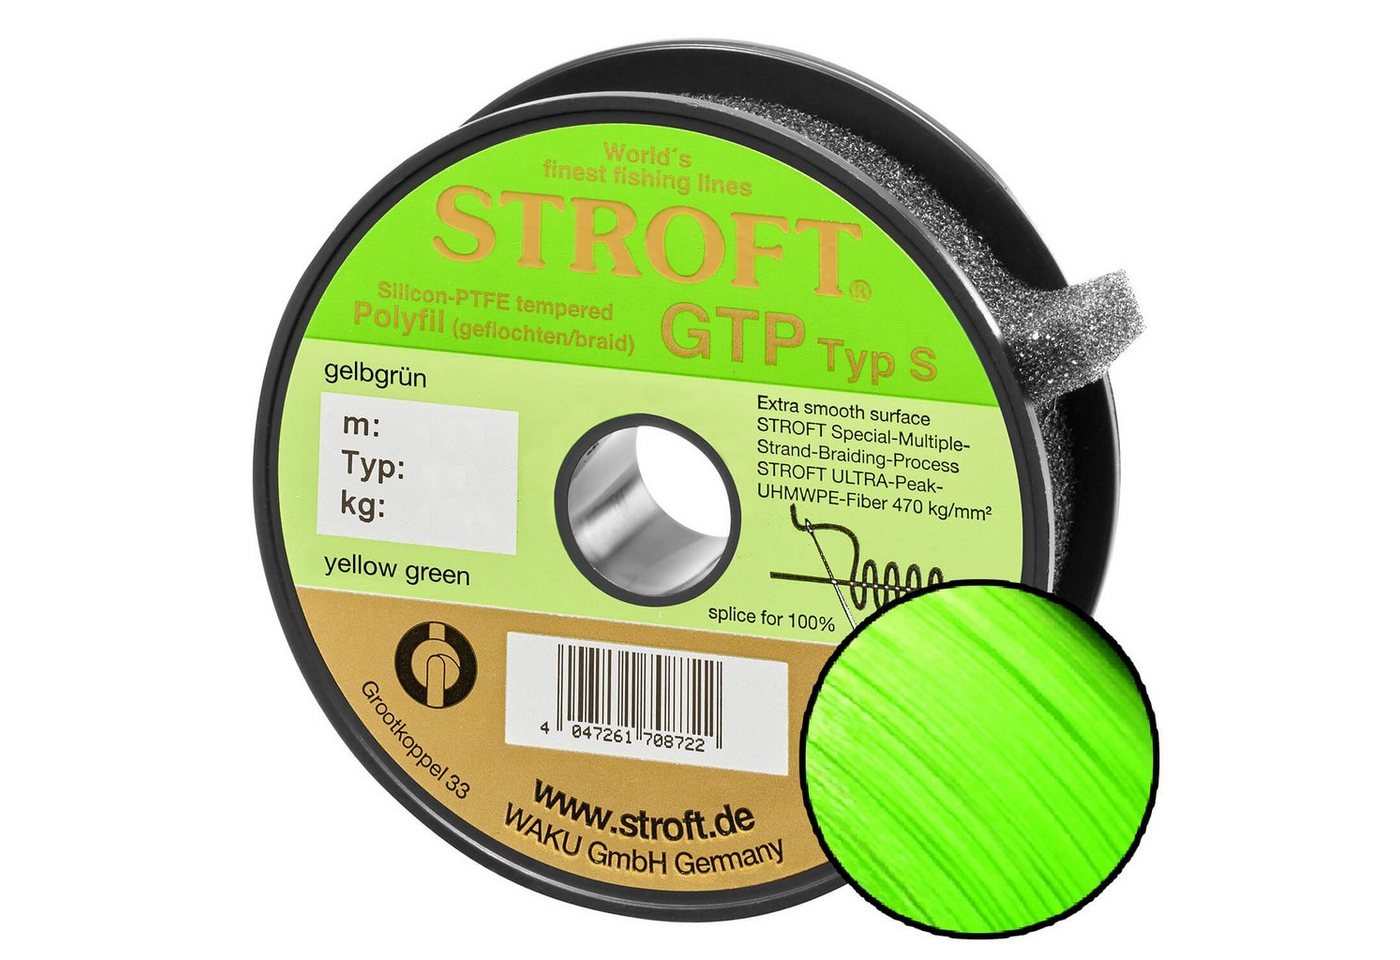 Stroft Angelschnur STROFT GTP Typ S Geflochtene Angelschnur 200m Gelbgrün, 200 m Länge, 0.22 mm Fadendurchmesser, (1-St), 10.0kg Tragkraft von Stroft